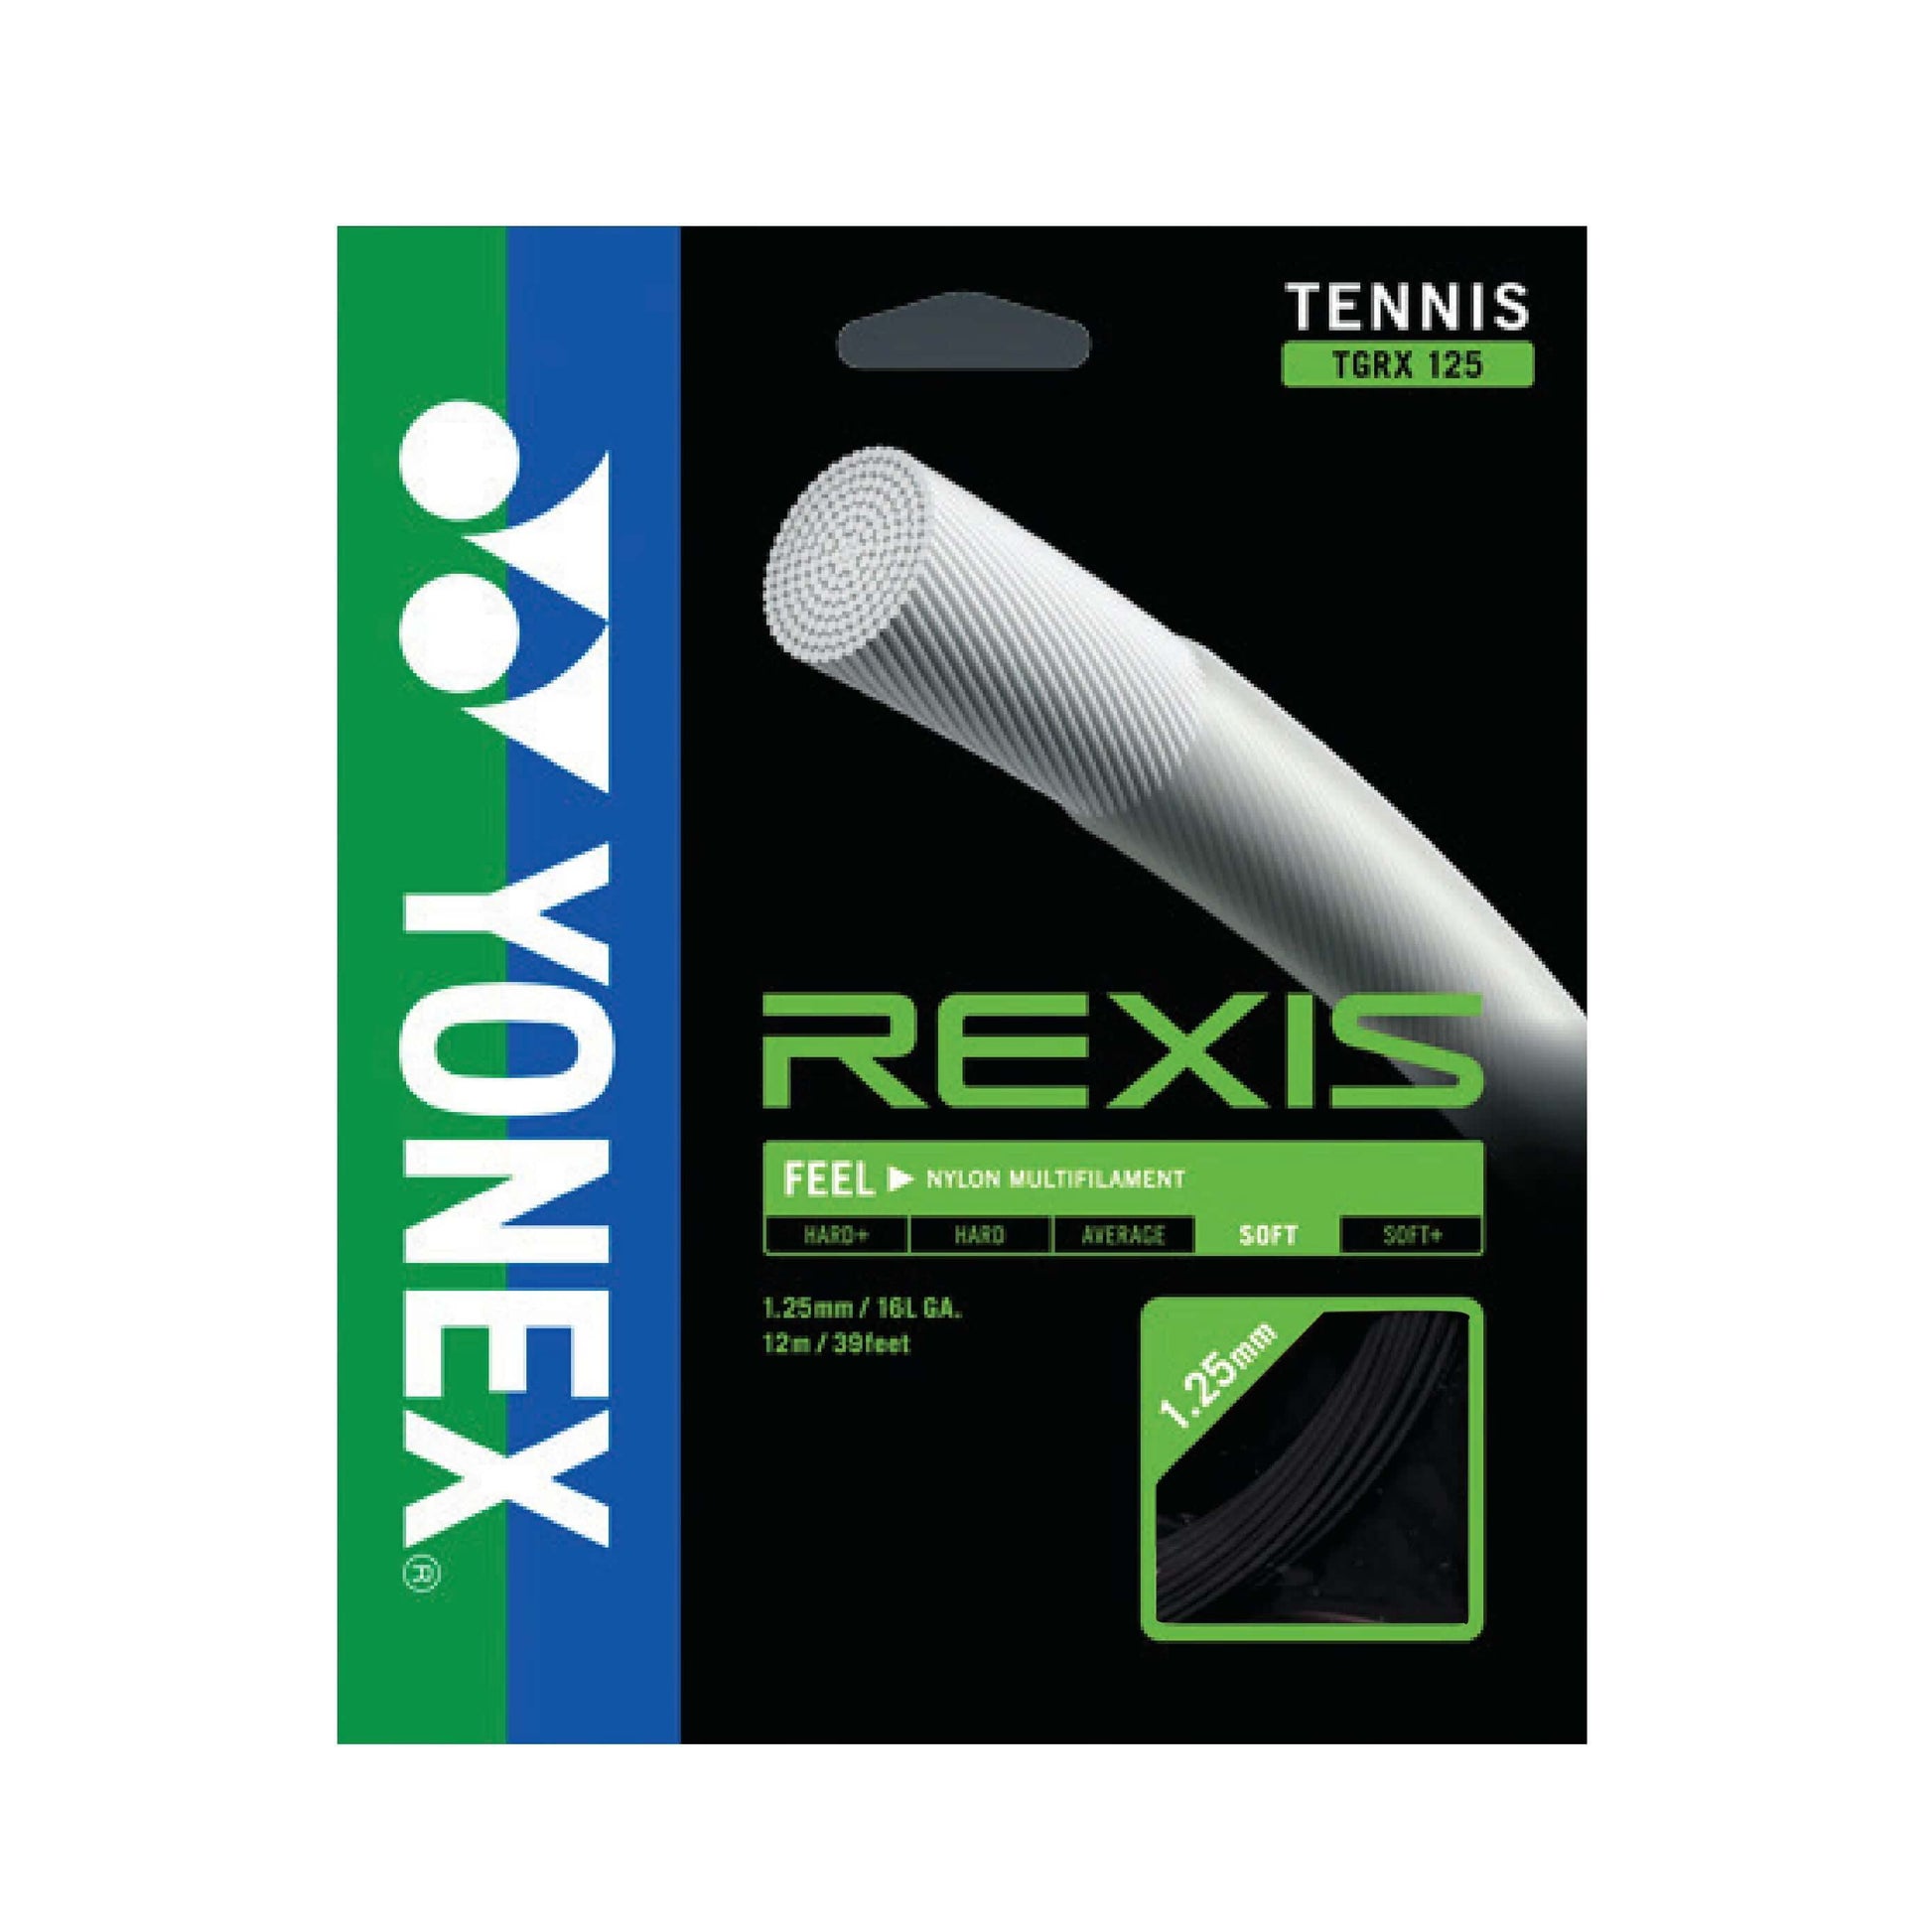 Yonex Rexis 125 / 16L Tennis String